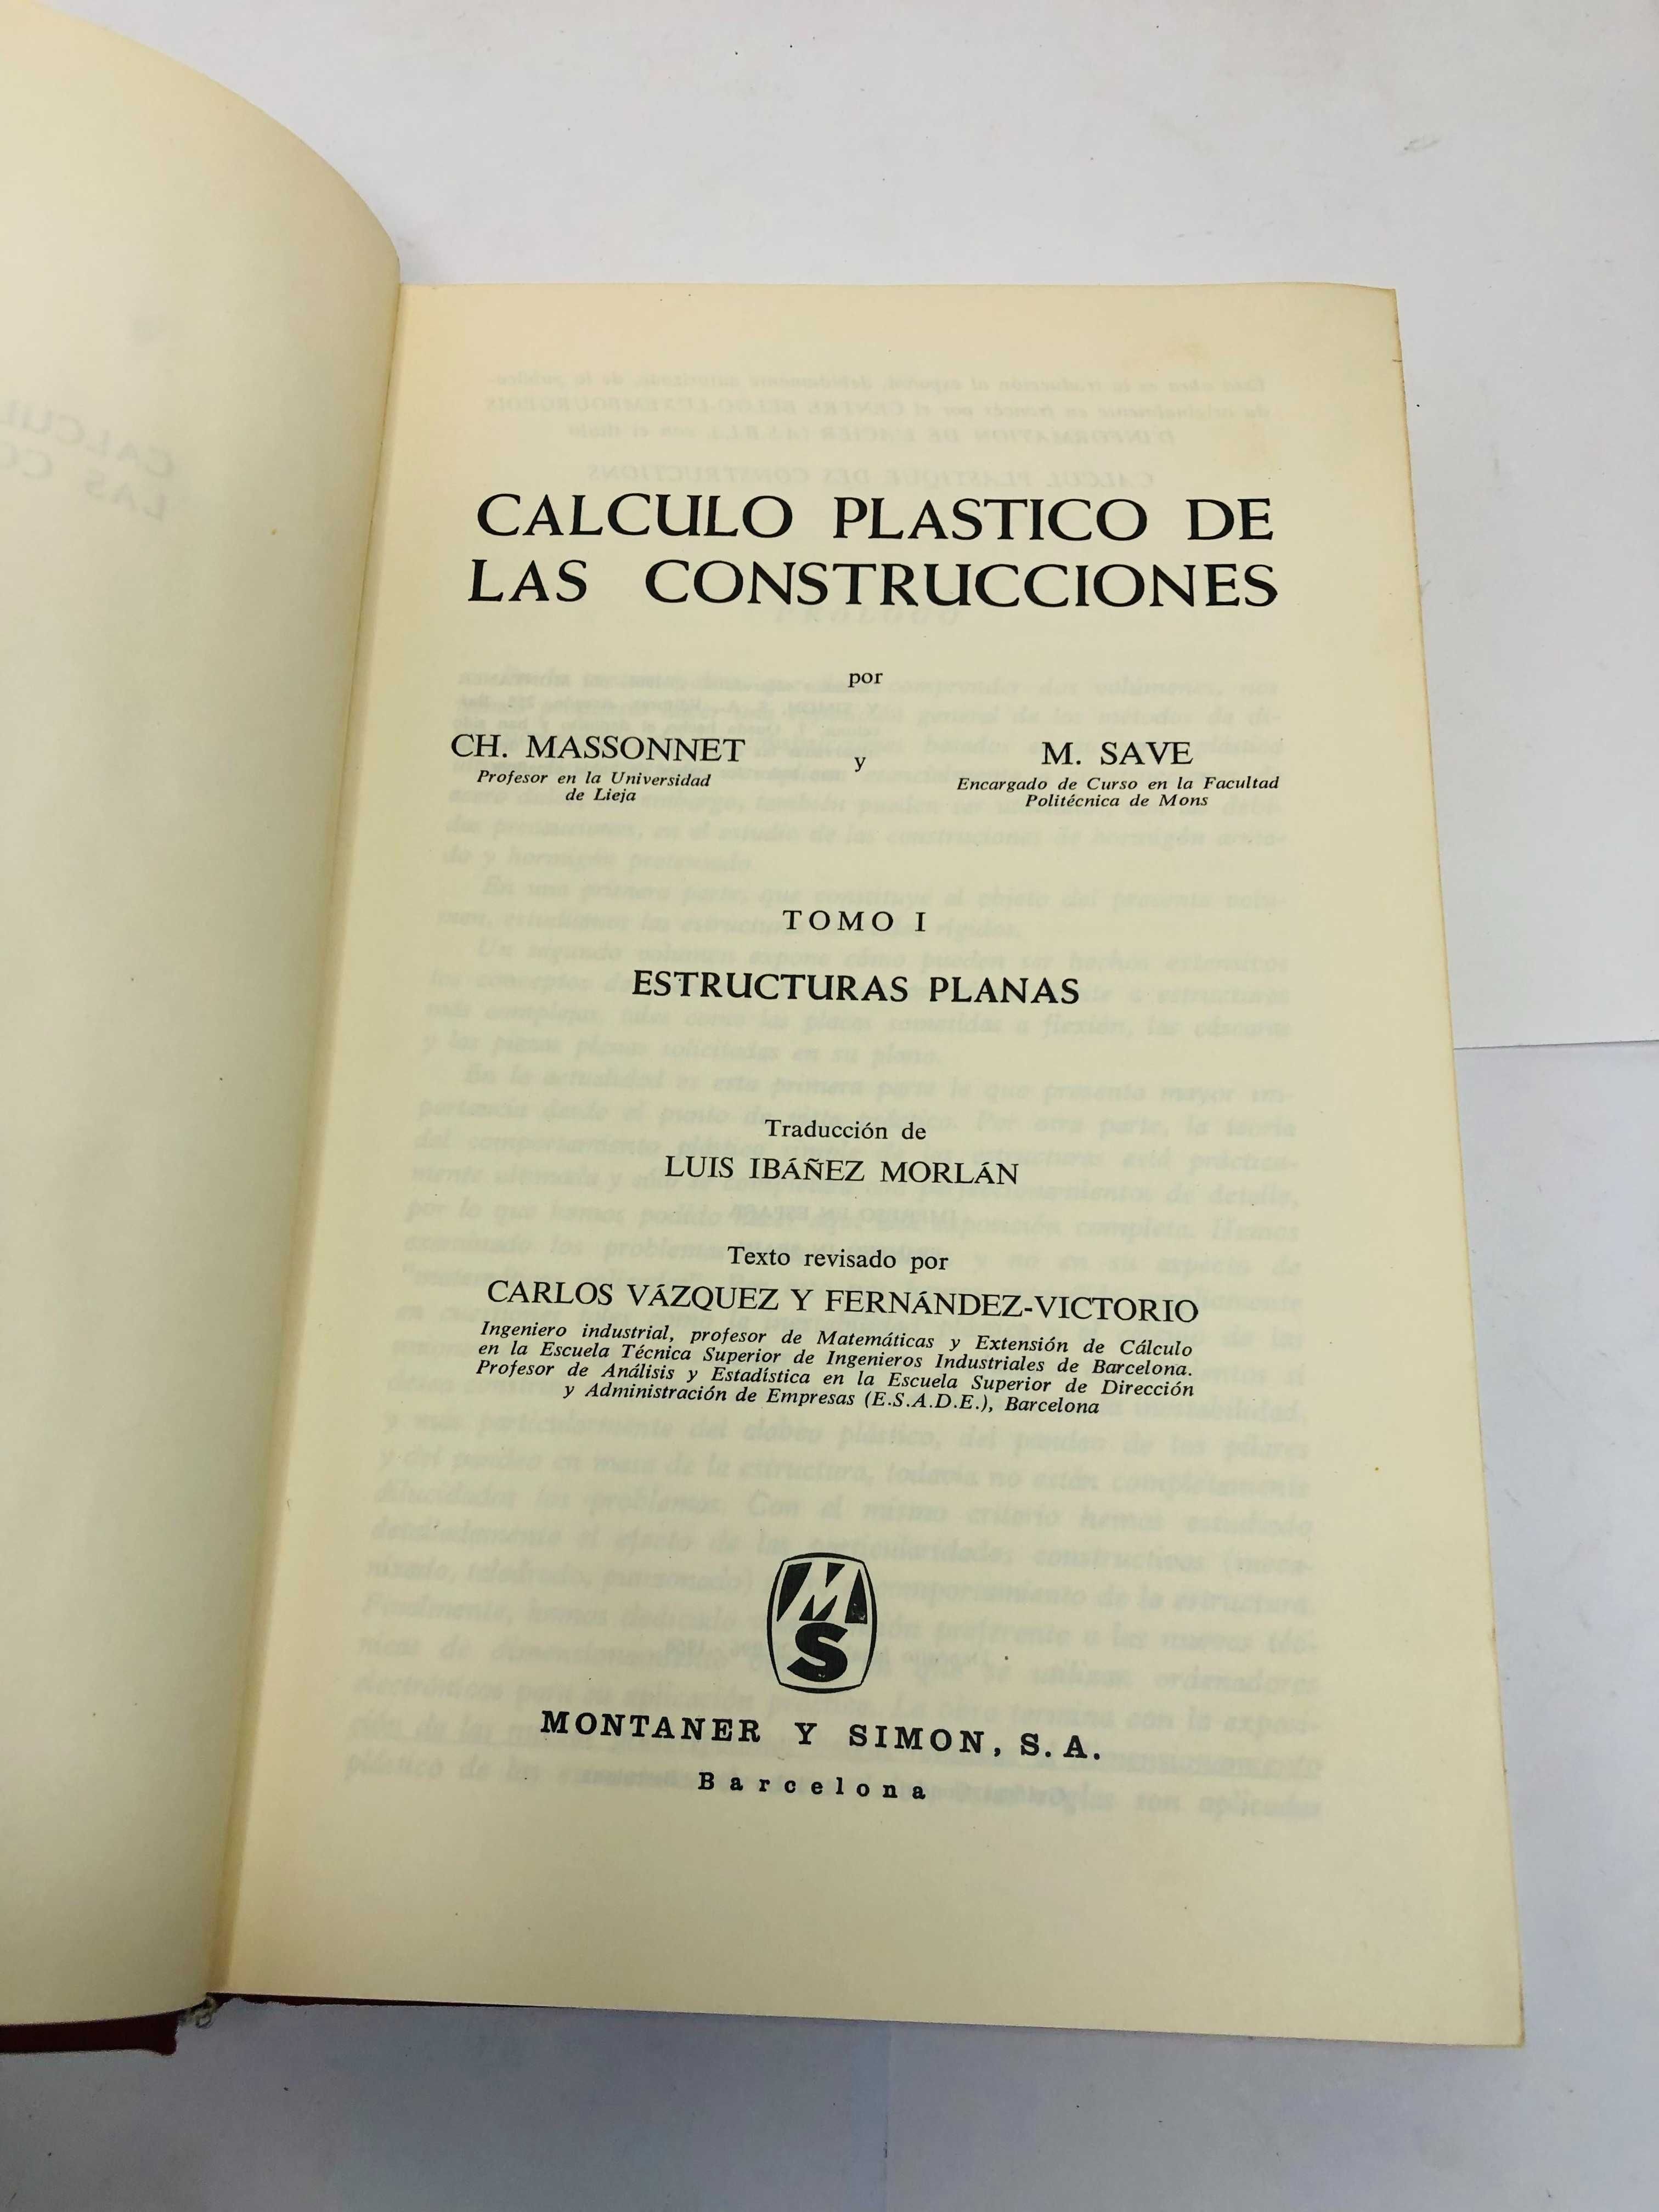 Calculo Plastico de las Construcciones - CH. Massonnet